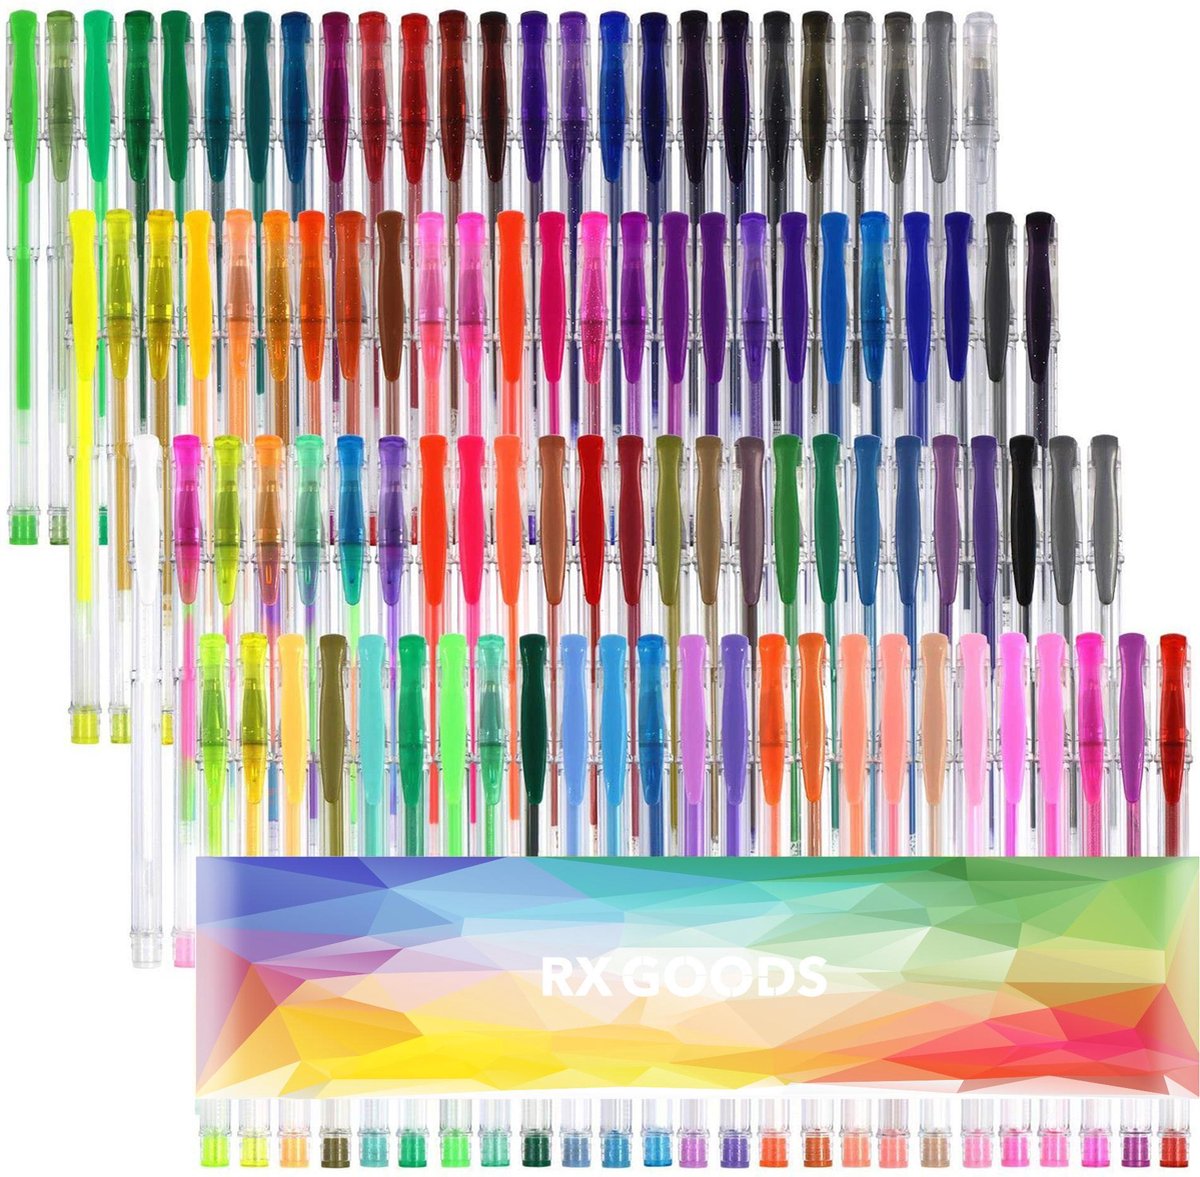 RX Goods® 100 Stuks Glitterpennen & Gelpennen voor kinderen en volwassenen – Glitter & Gel Pennen – Leuk voor Kleurboeken, Tekenen & Schrijven